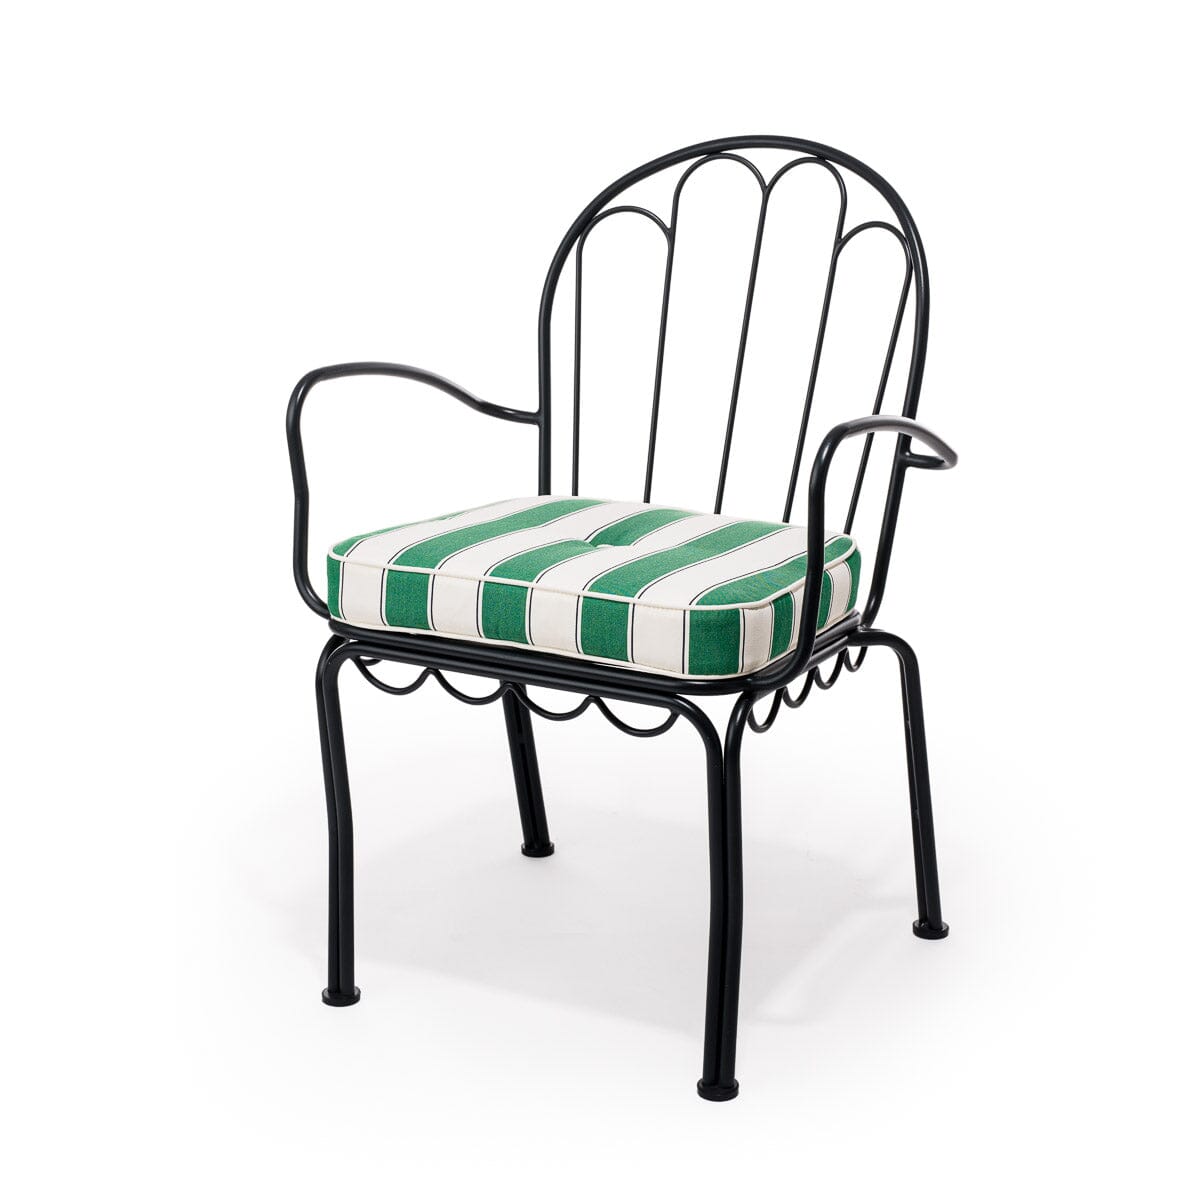 The Al Fresco Chair Cushion - STAUD Stripe Al Fresco Chair Cushion Business & Pleasure Co 